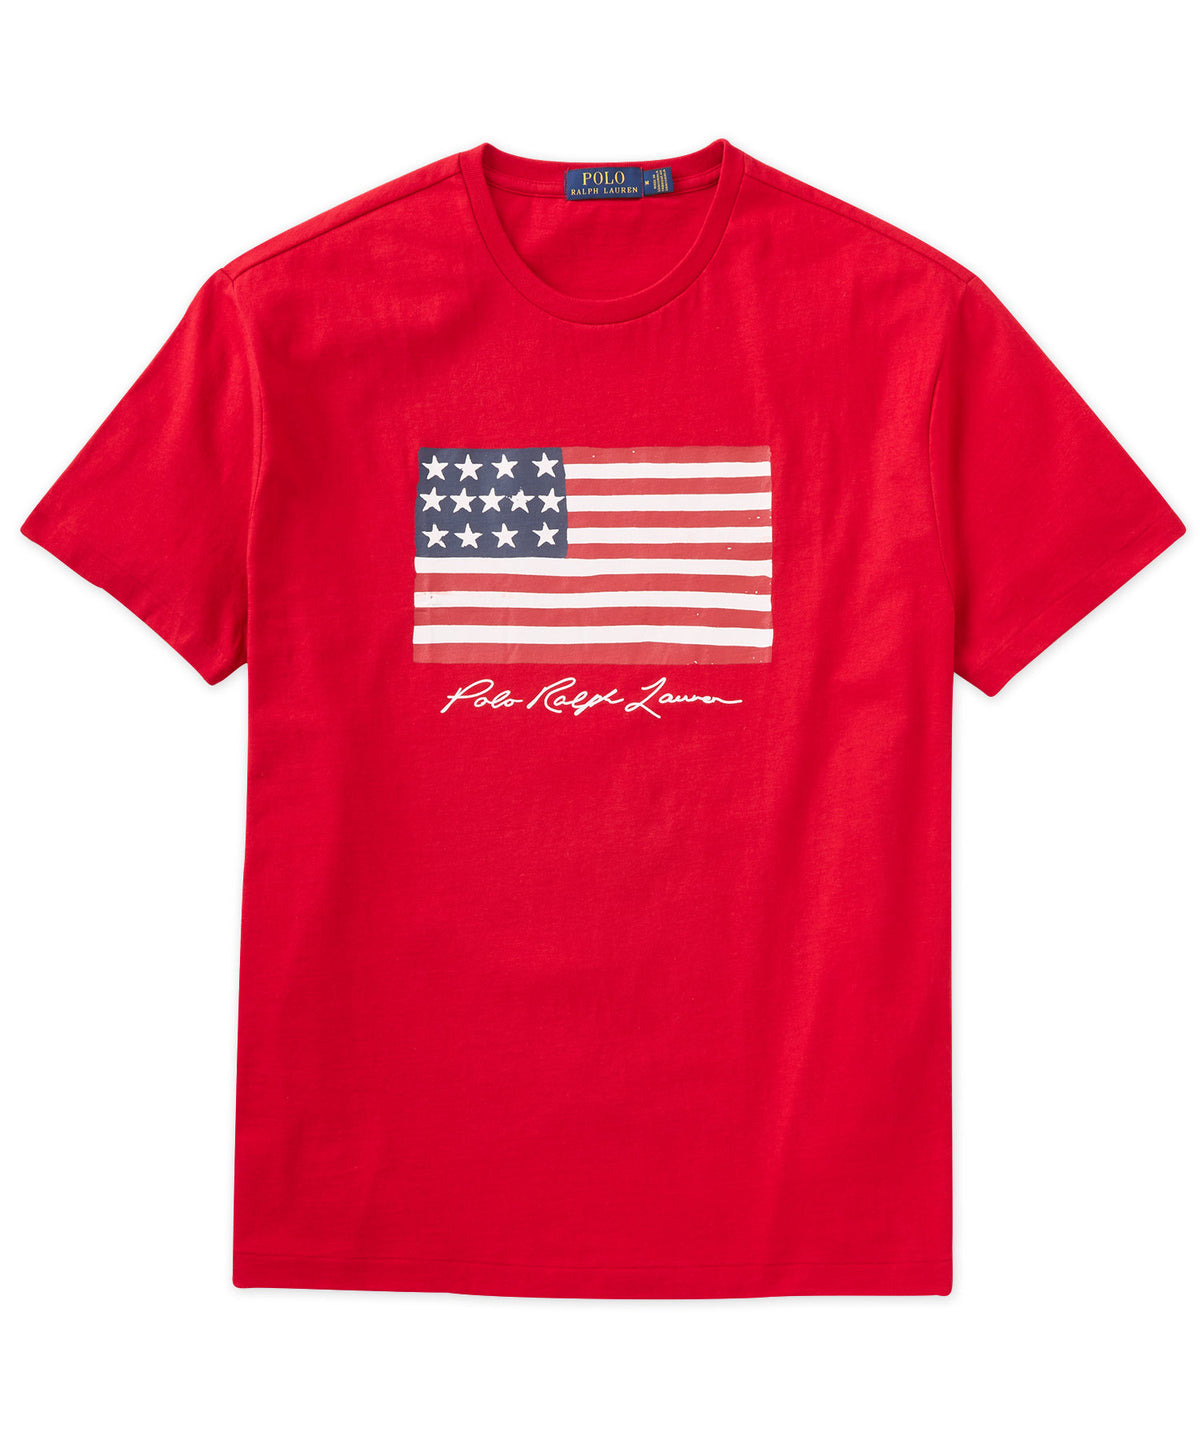 Polo Ralph Lauren Short Sleeve American Flag T-Shirt - Westport Big & Tall